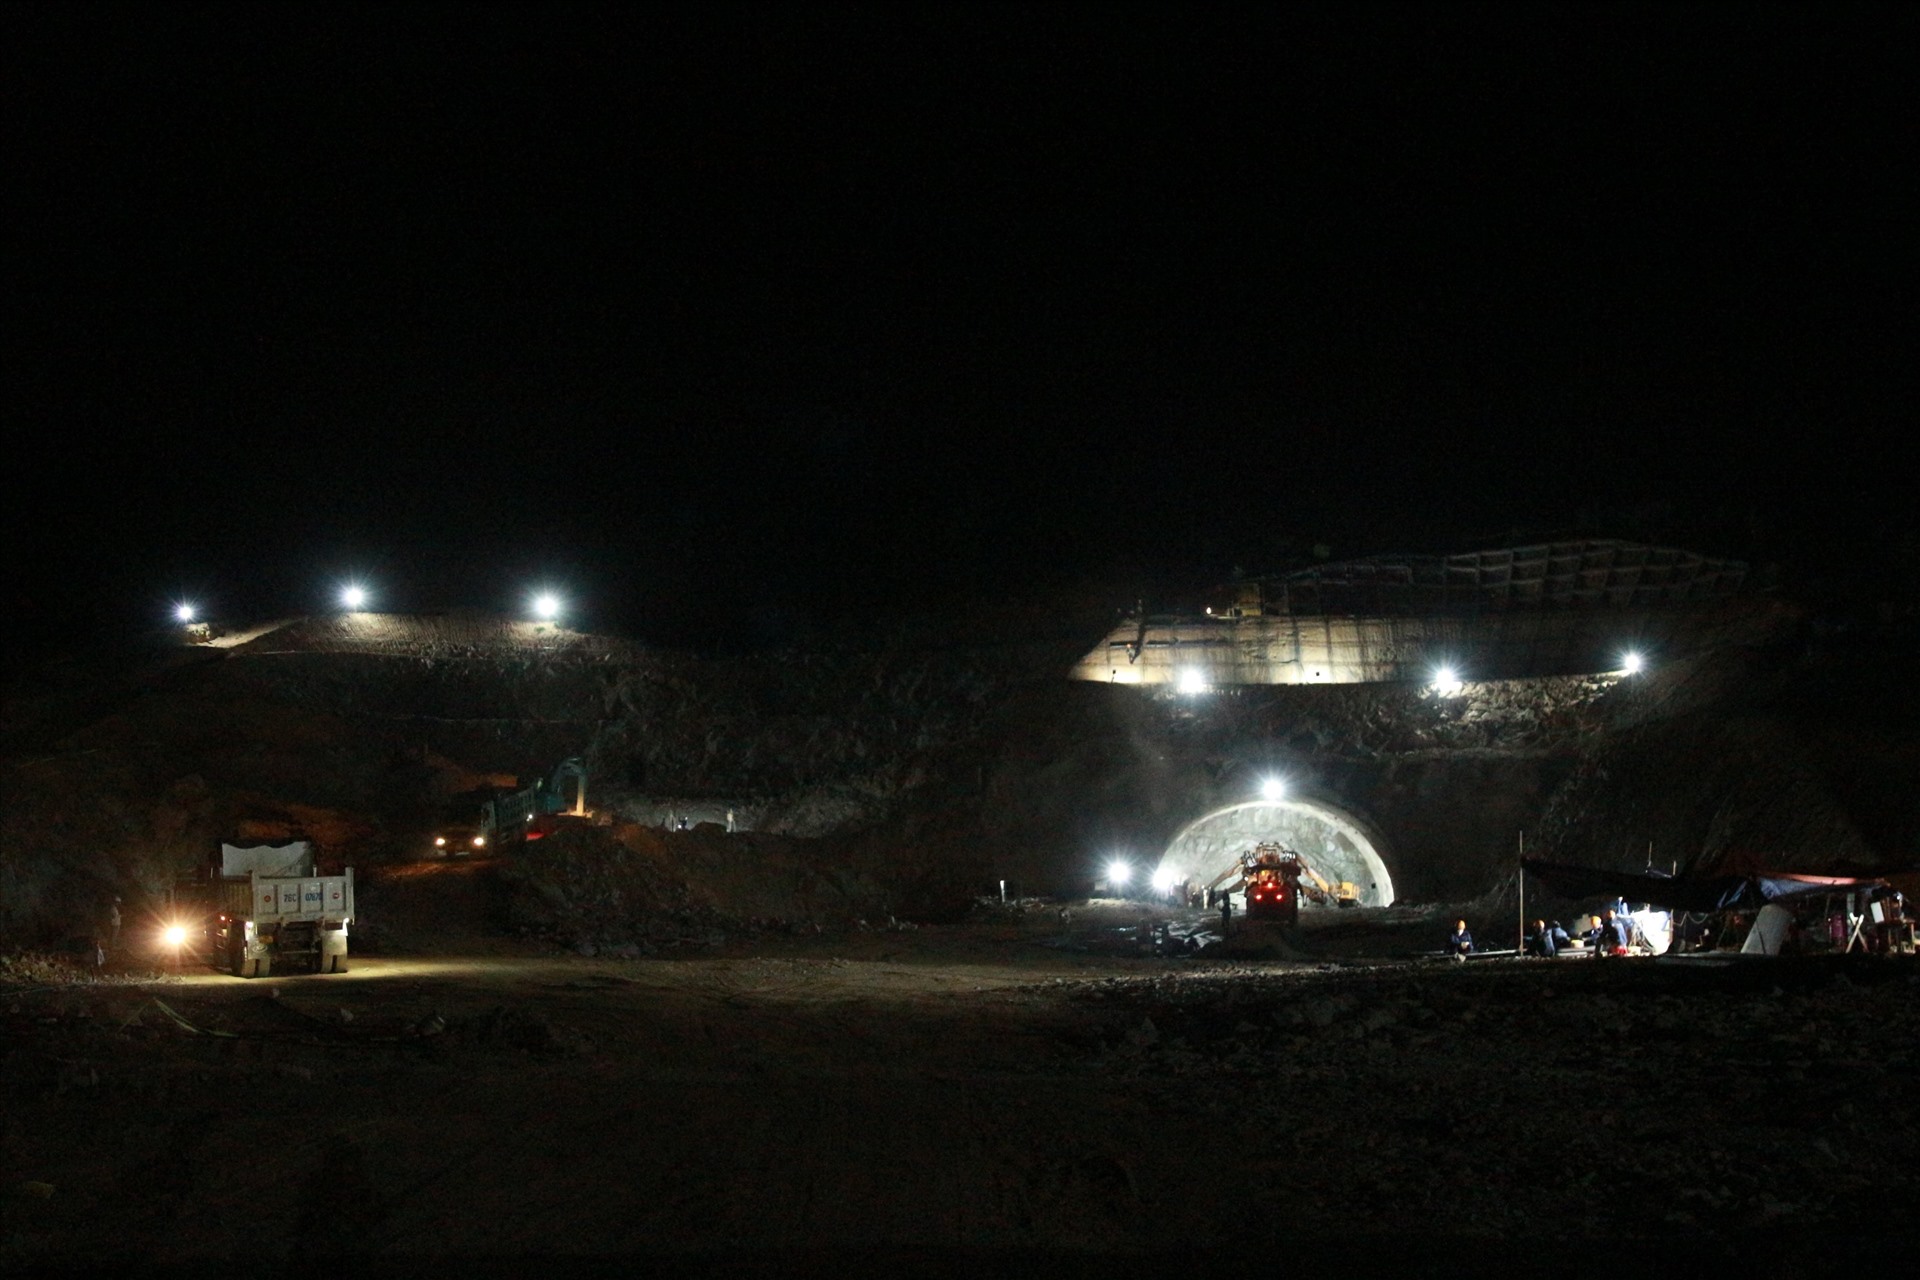 Đơn vị thi công đang triển khai làm việc 24/24 nhằm rút ngắn thời gian hoàn thành 3 đường hầm trên tuyến Cao tốc Quảng Ngãi – Hoài Nhơn. Ảnh: Ngọc Viên